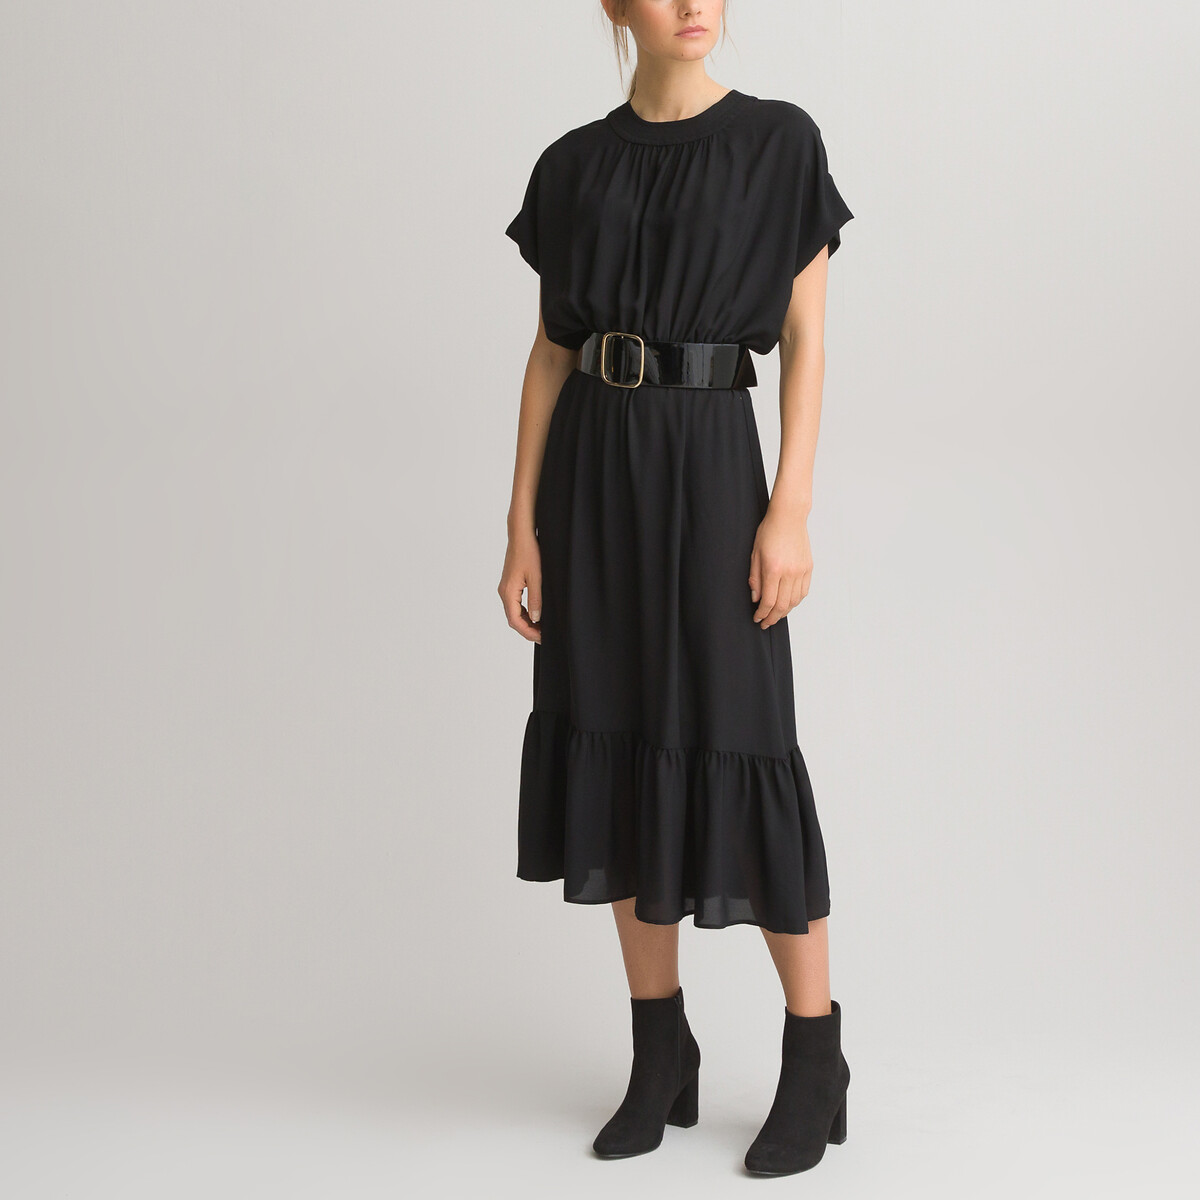 Платье LaRedoute Длинное с короткими рукавами 38 (FR) - 44 (RUS) черный, размер 38 (FR) - 44 (RUS) Длинное с короткими рукавами 38 (FR) - 44 (RUS) черный - фото 1